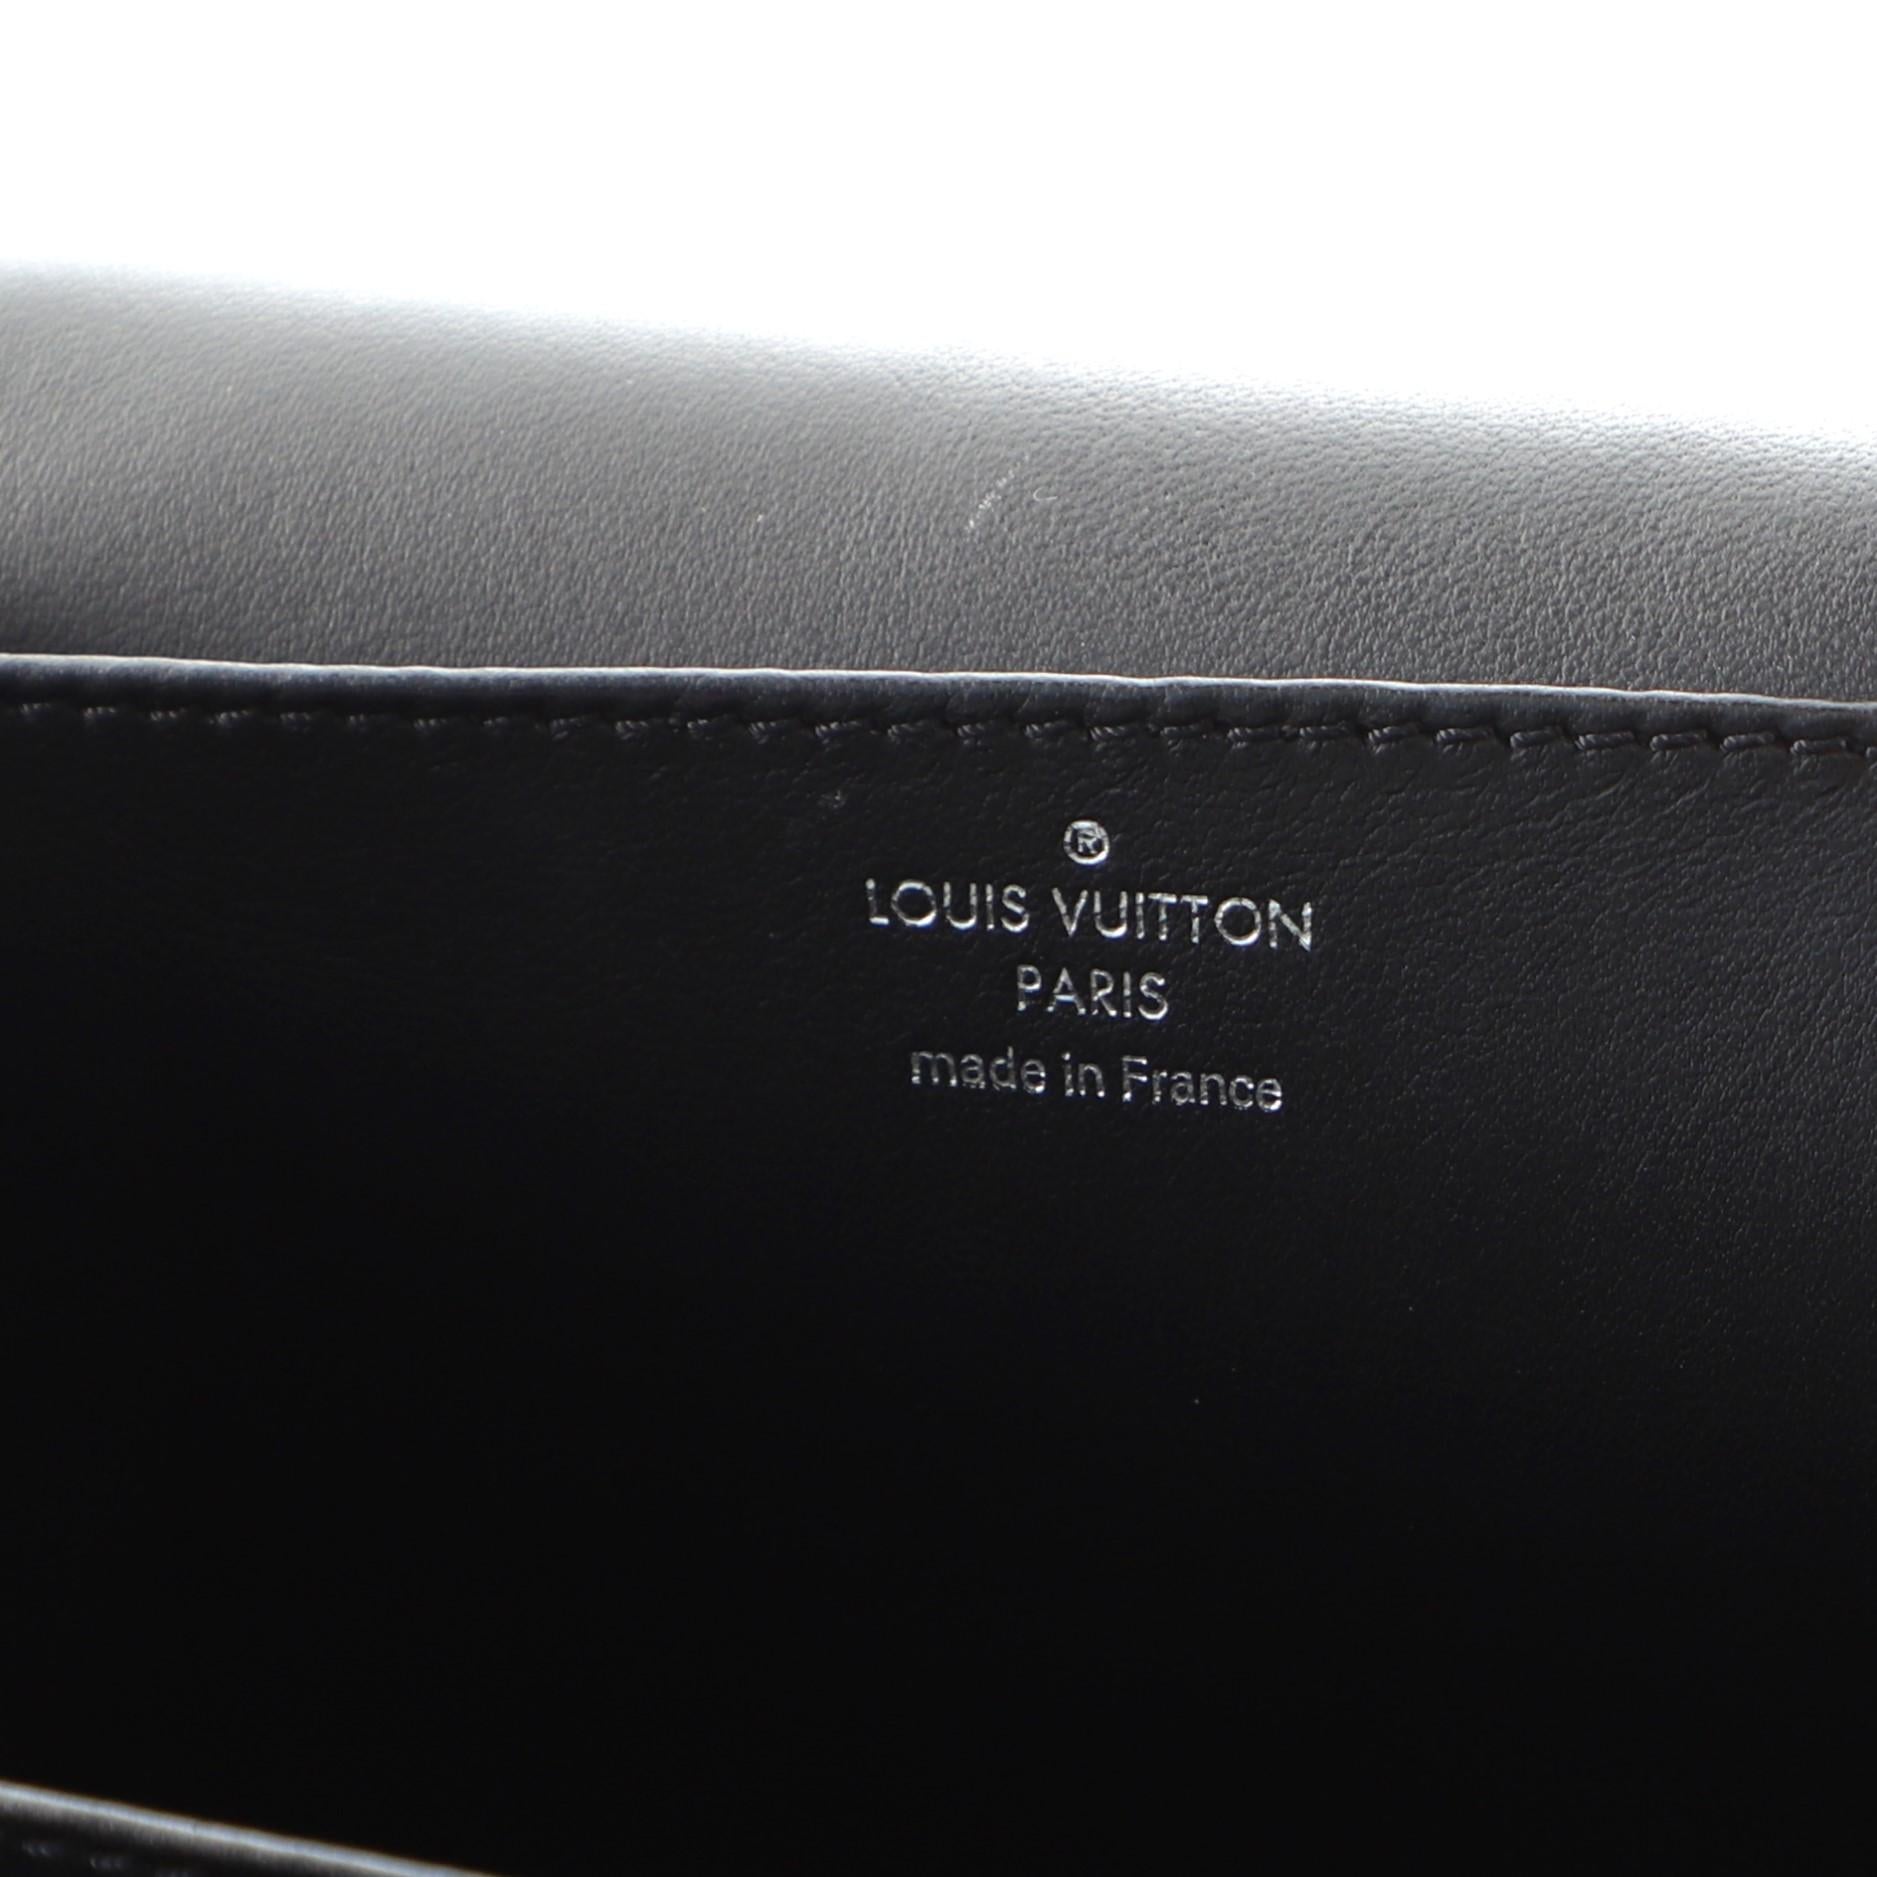 Women's or Men's Louis Vuitton Vivienne NM Handbag Leather